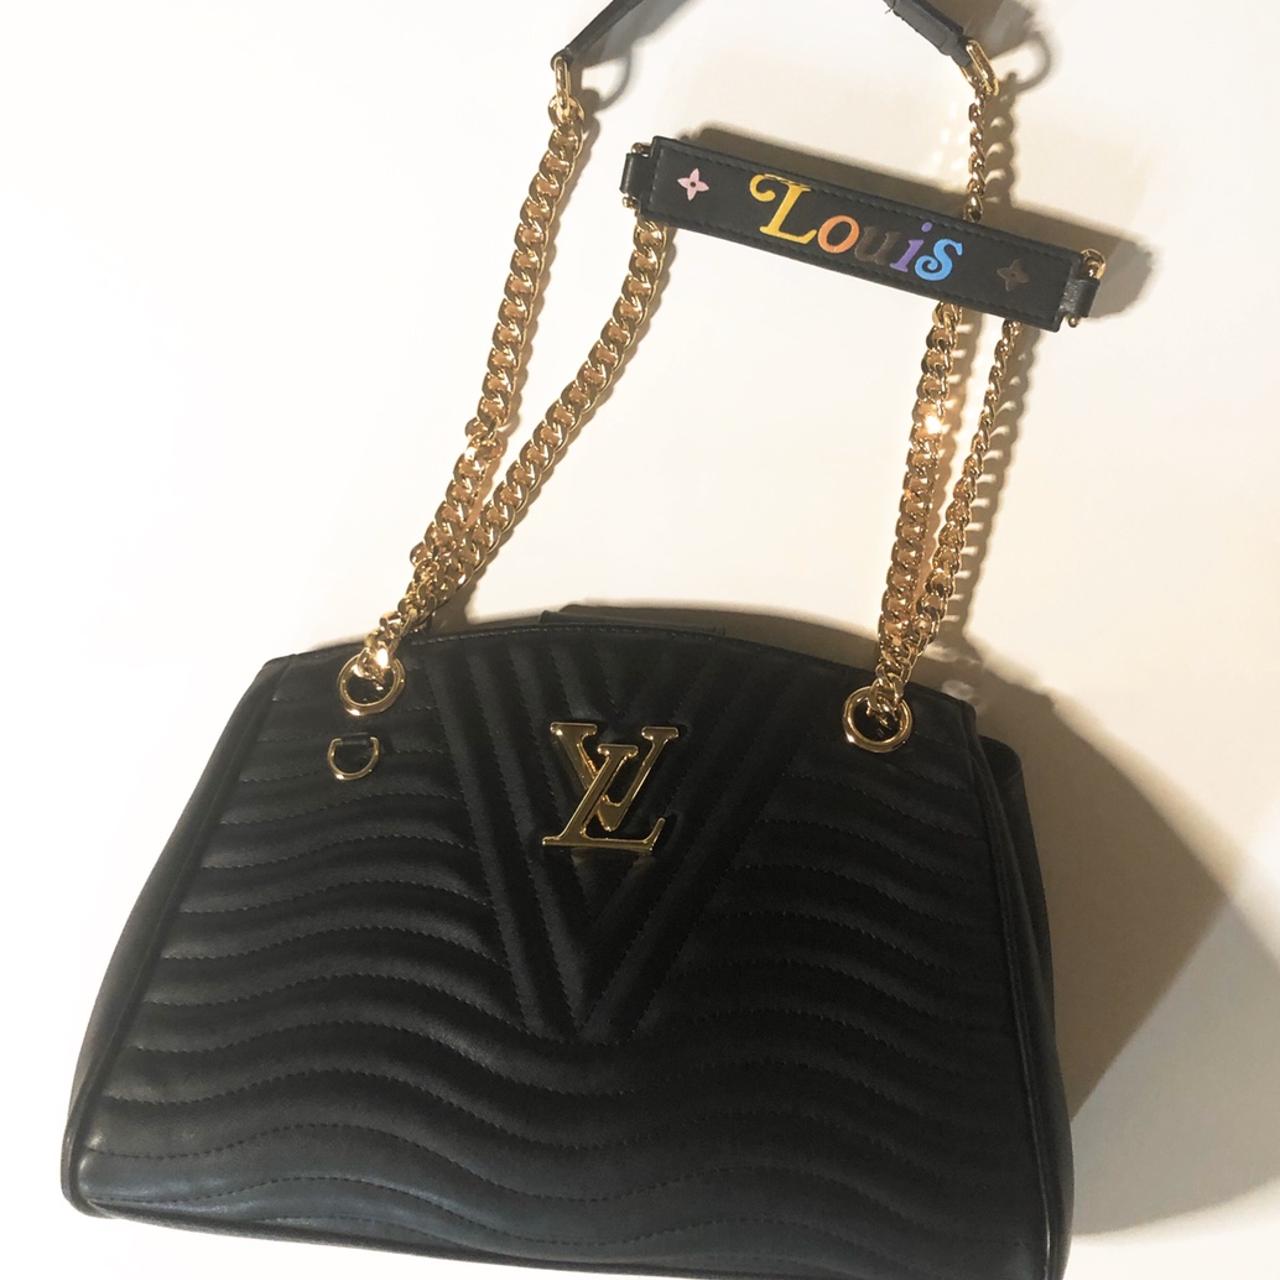 LOUIS VUITTON LV New Wave Chain Bag MM RP: $2890 + - Depop